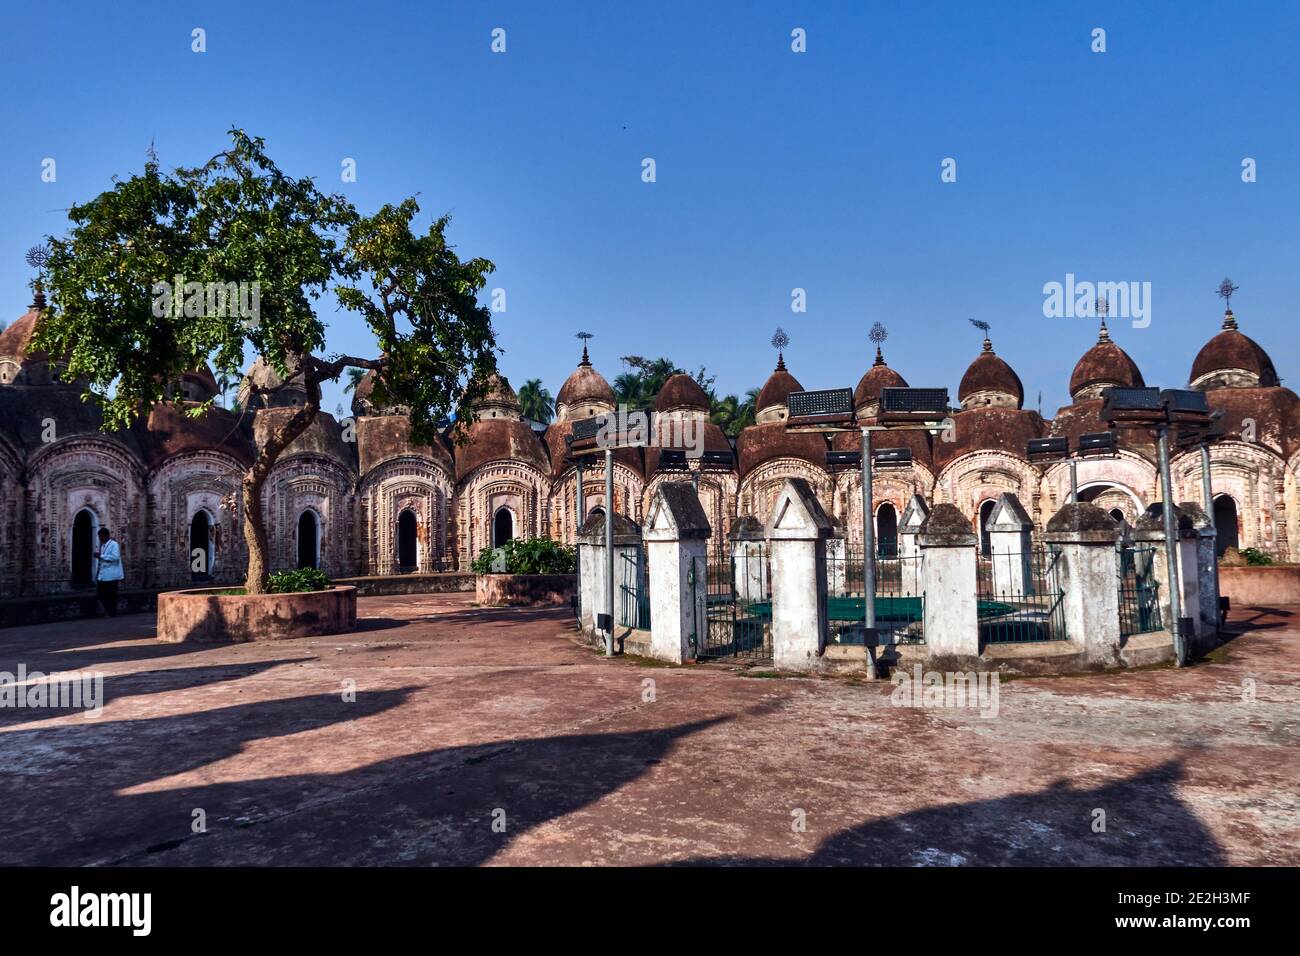 Kalna City, Westbengalen, Indien. Der Backstein Bardhaman Naba Kailash Tempel, der Lord Shiva gewidmet ist, wurde 1809 in zwei konzentrischen Kreisen (äußere Cir Stockfoto